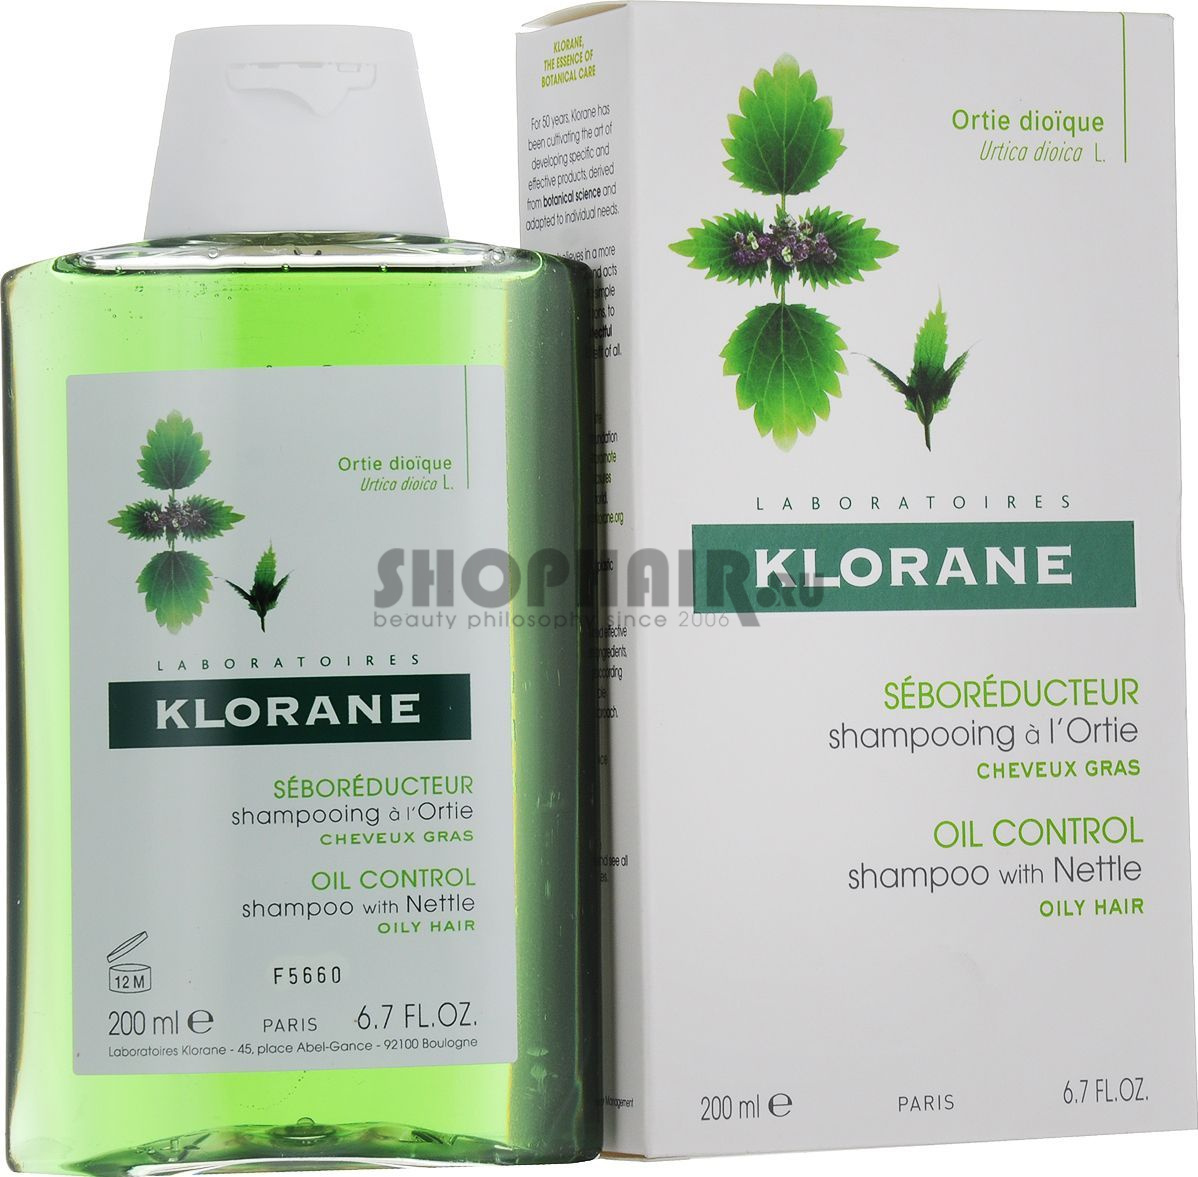 Klorane - Шампунь с органическим экстрактом крапивы 200 мл Klorane (Франция) купить по цене 725 руб.